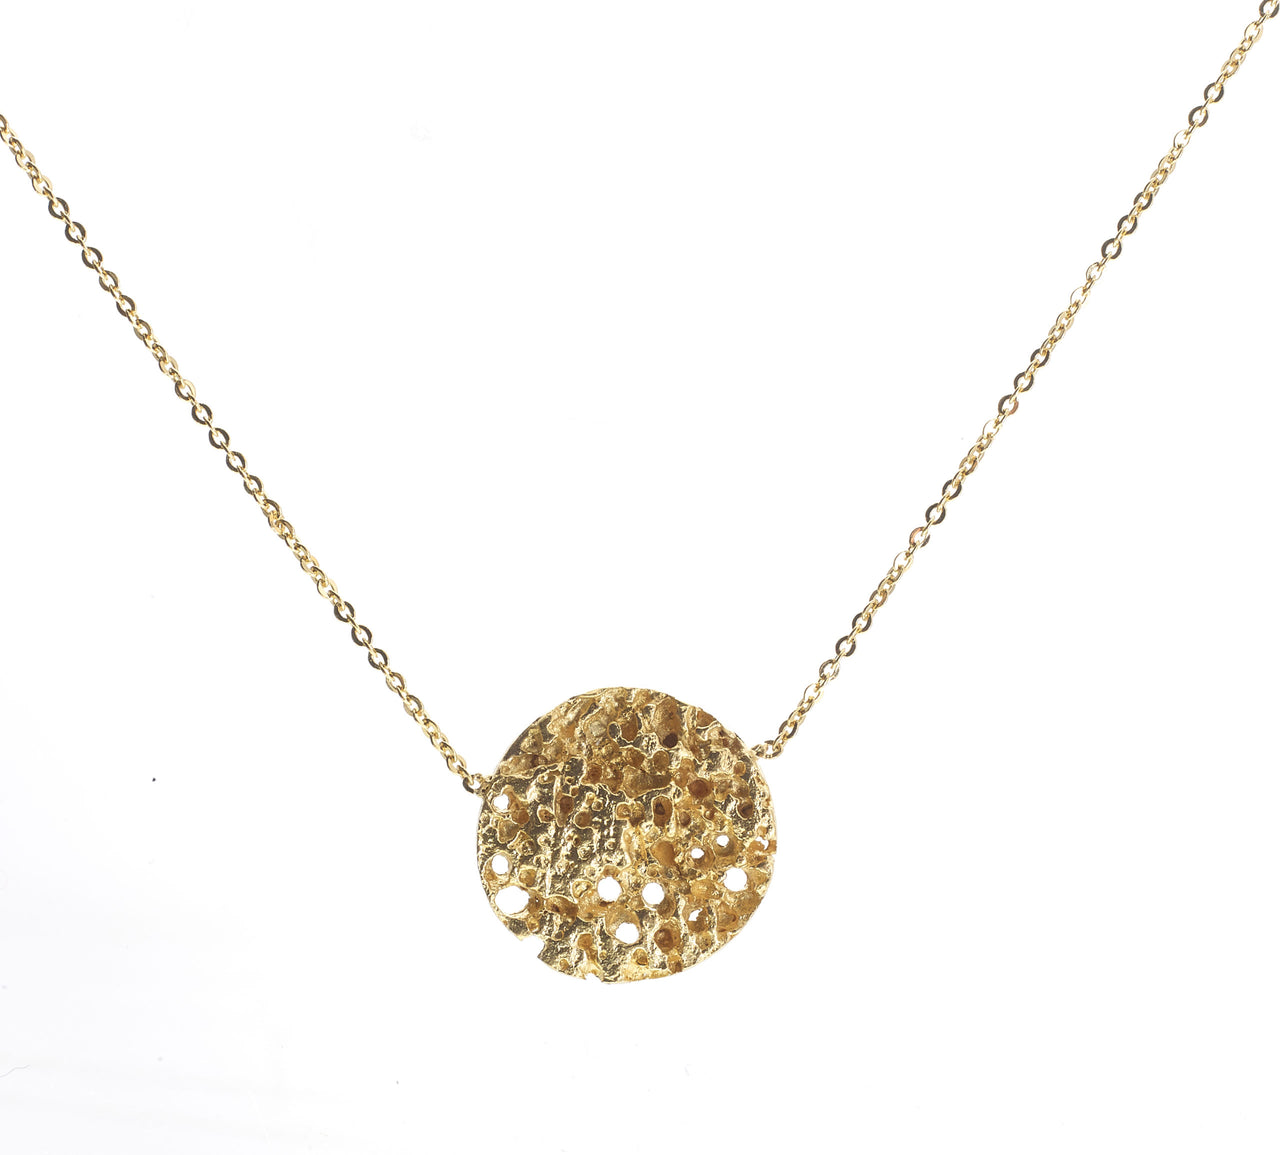 Moonscape 24ct vermeil Gold Necklace